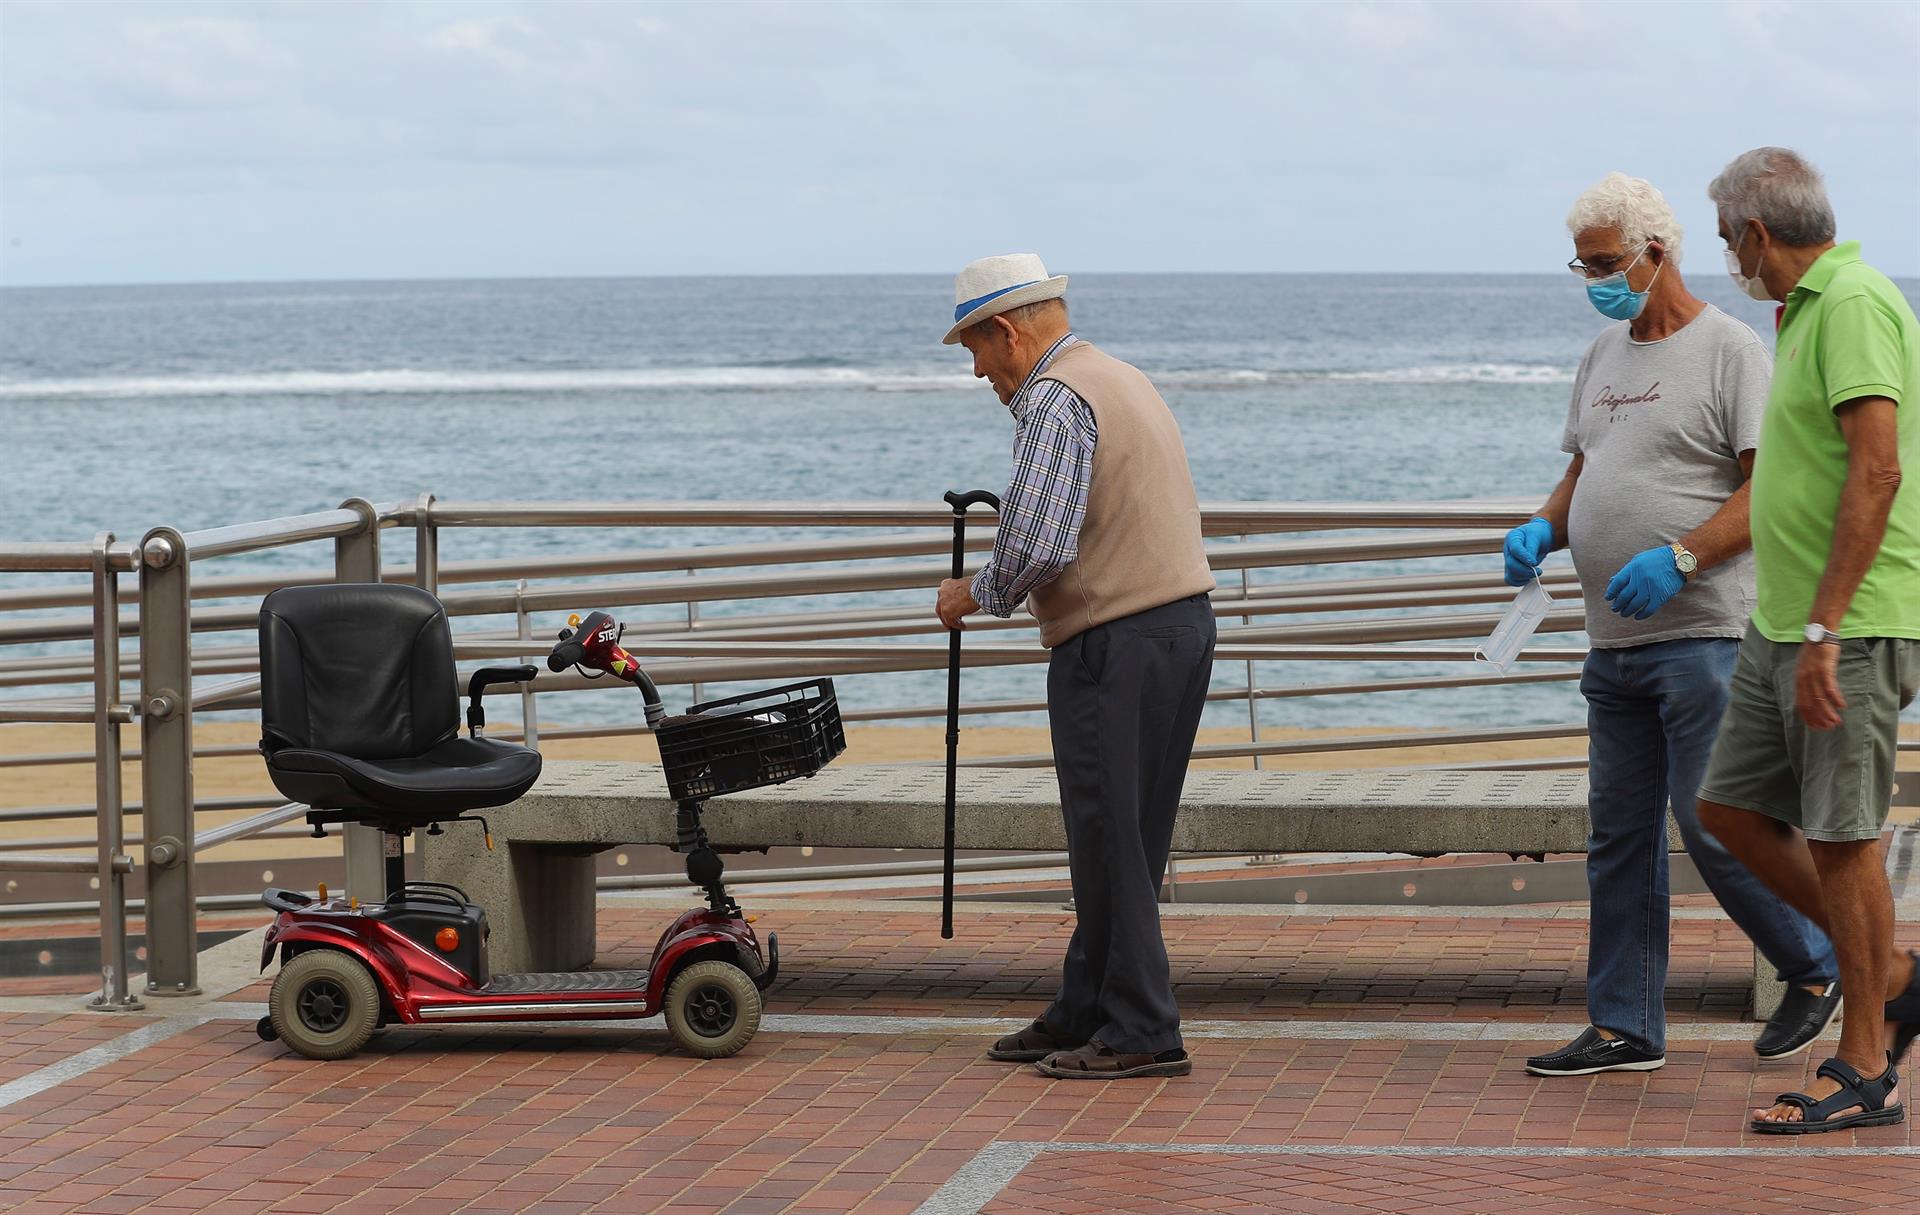 Foto de archivo de un hombre mayor caminando por el paseo de Las Canteras, en Las Palmas de Gran Canaria. EFE/ Elvira Urquijo A.